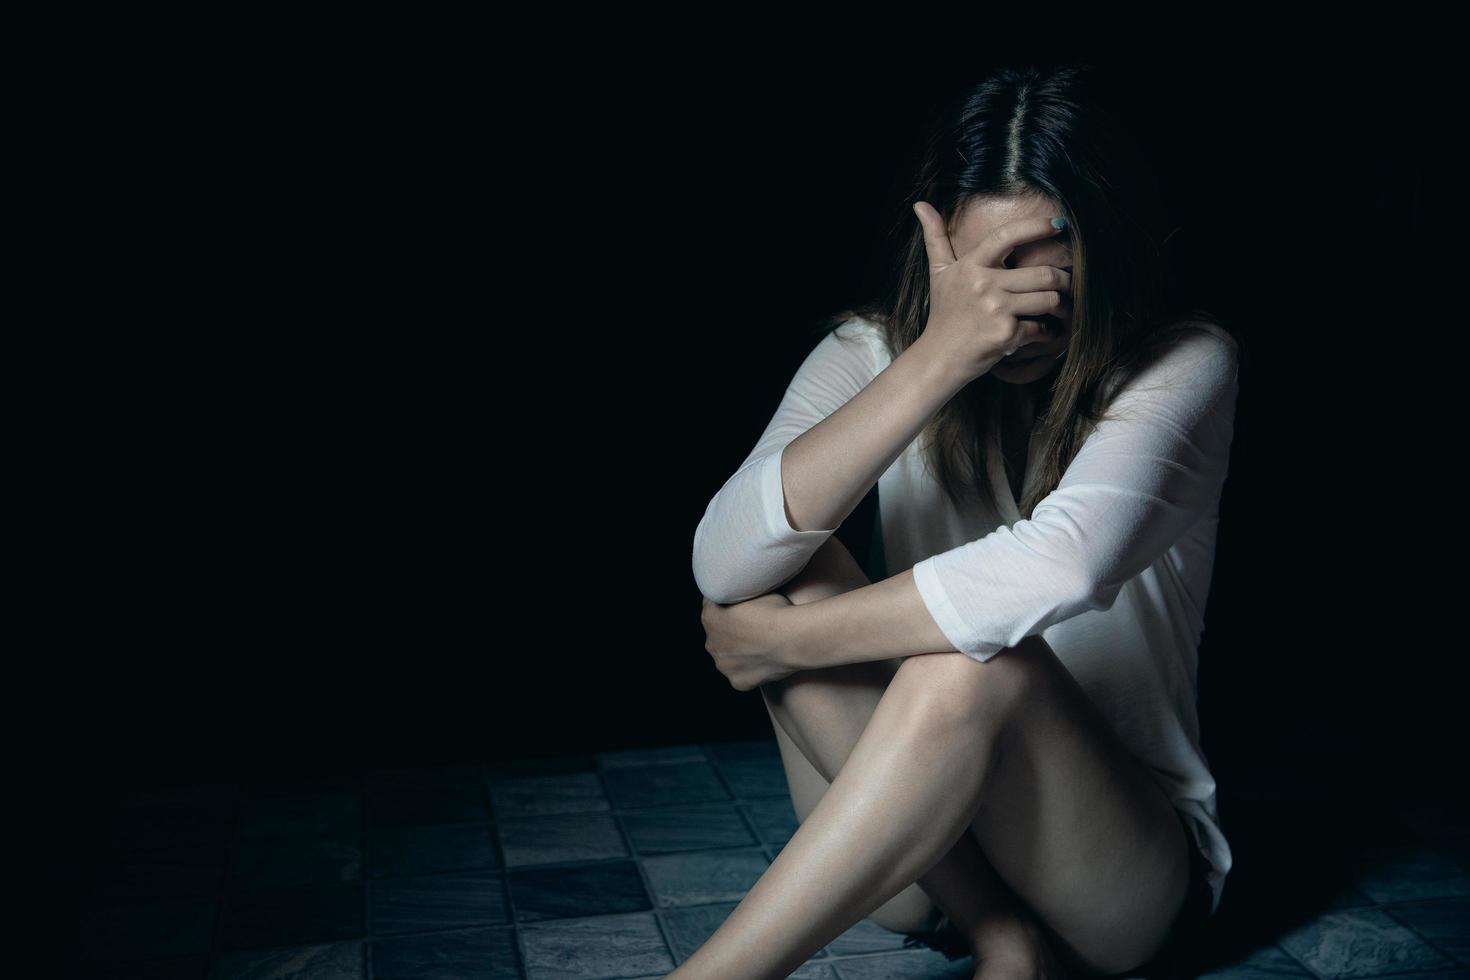 mujer joven triste, estresada y solitaria sentada en una habitación oscura, adolescente infeliz y llorando por violencia doméstica, una mujer adulta expresa sentimientos de desesperación, ansiedad por el acoso. foto